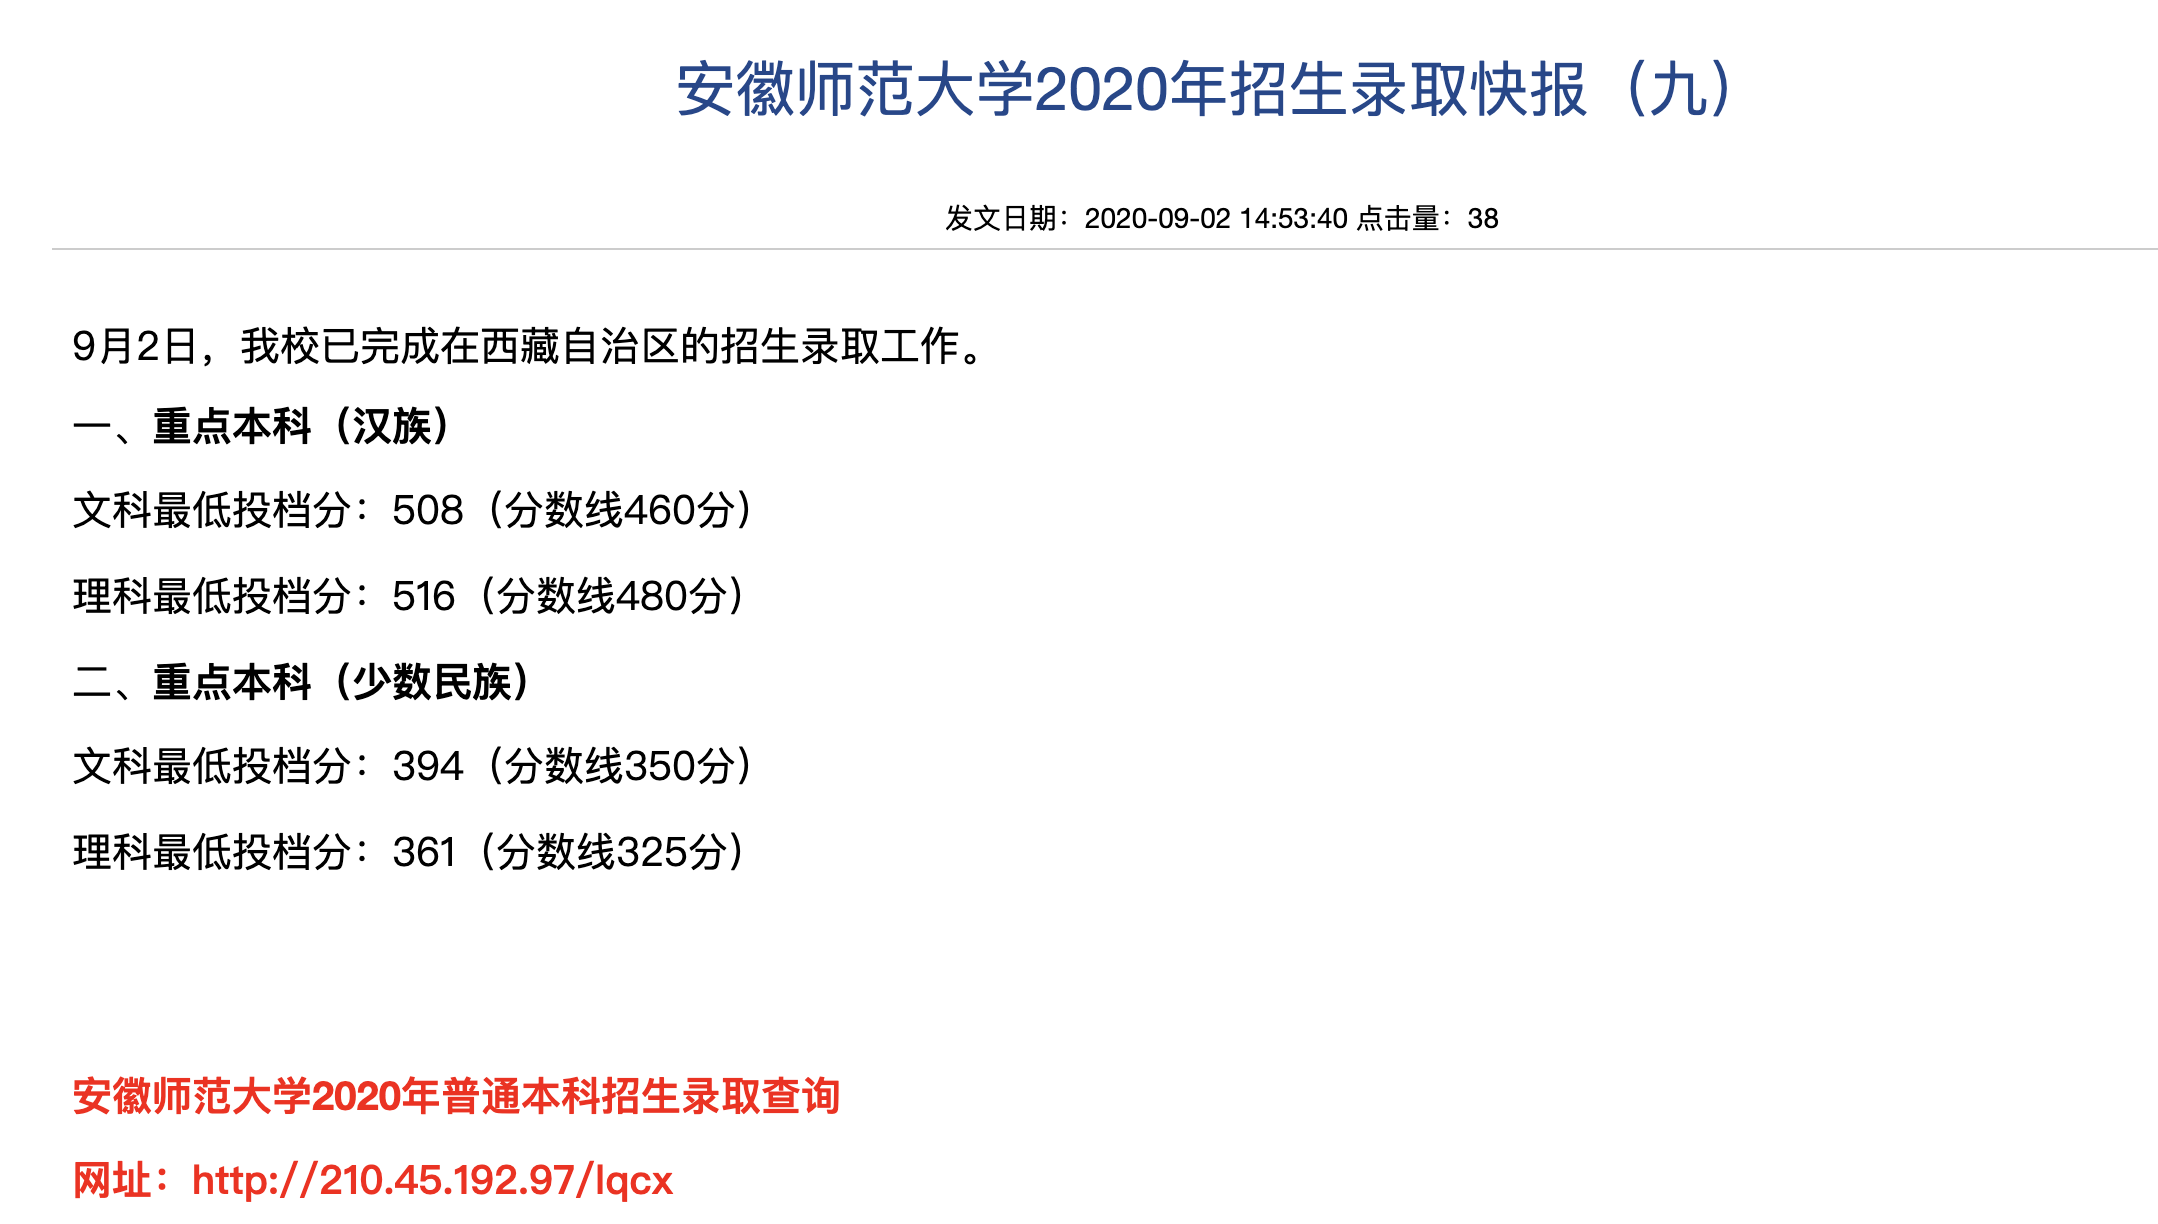 安徽师范大学2020年西藏自治区的招生录取查询及录取分数